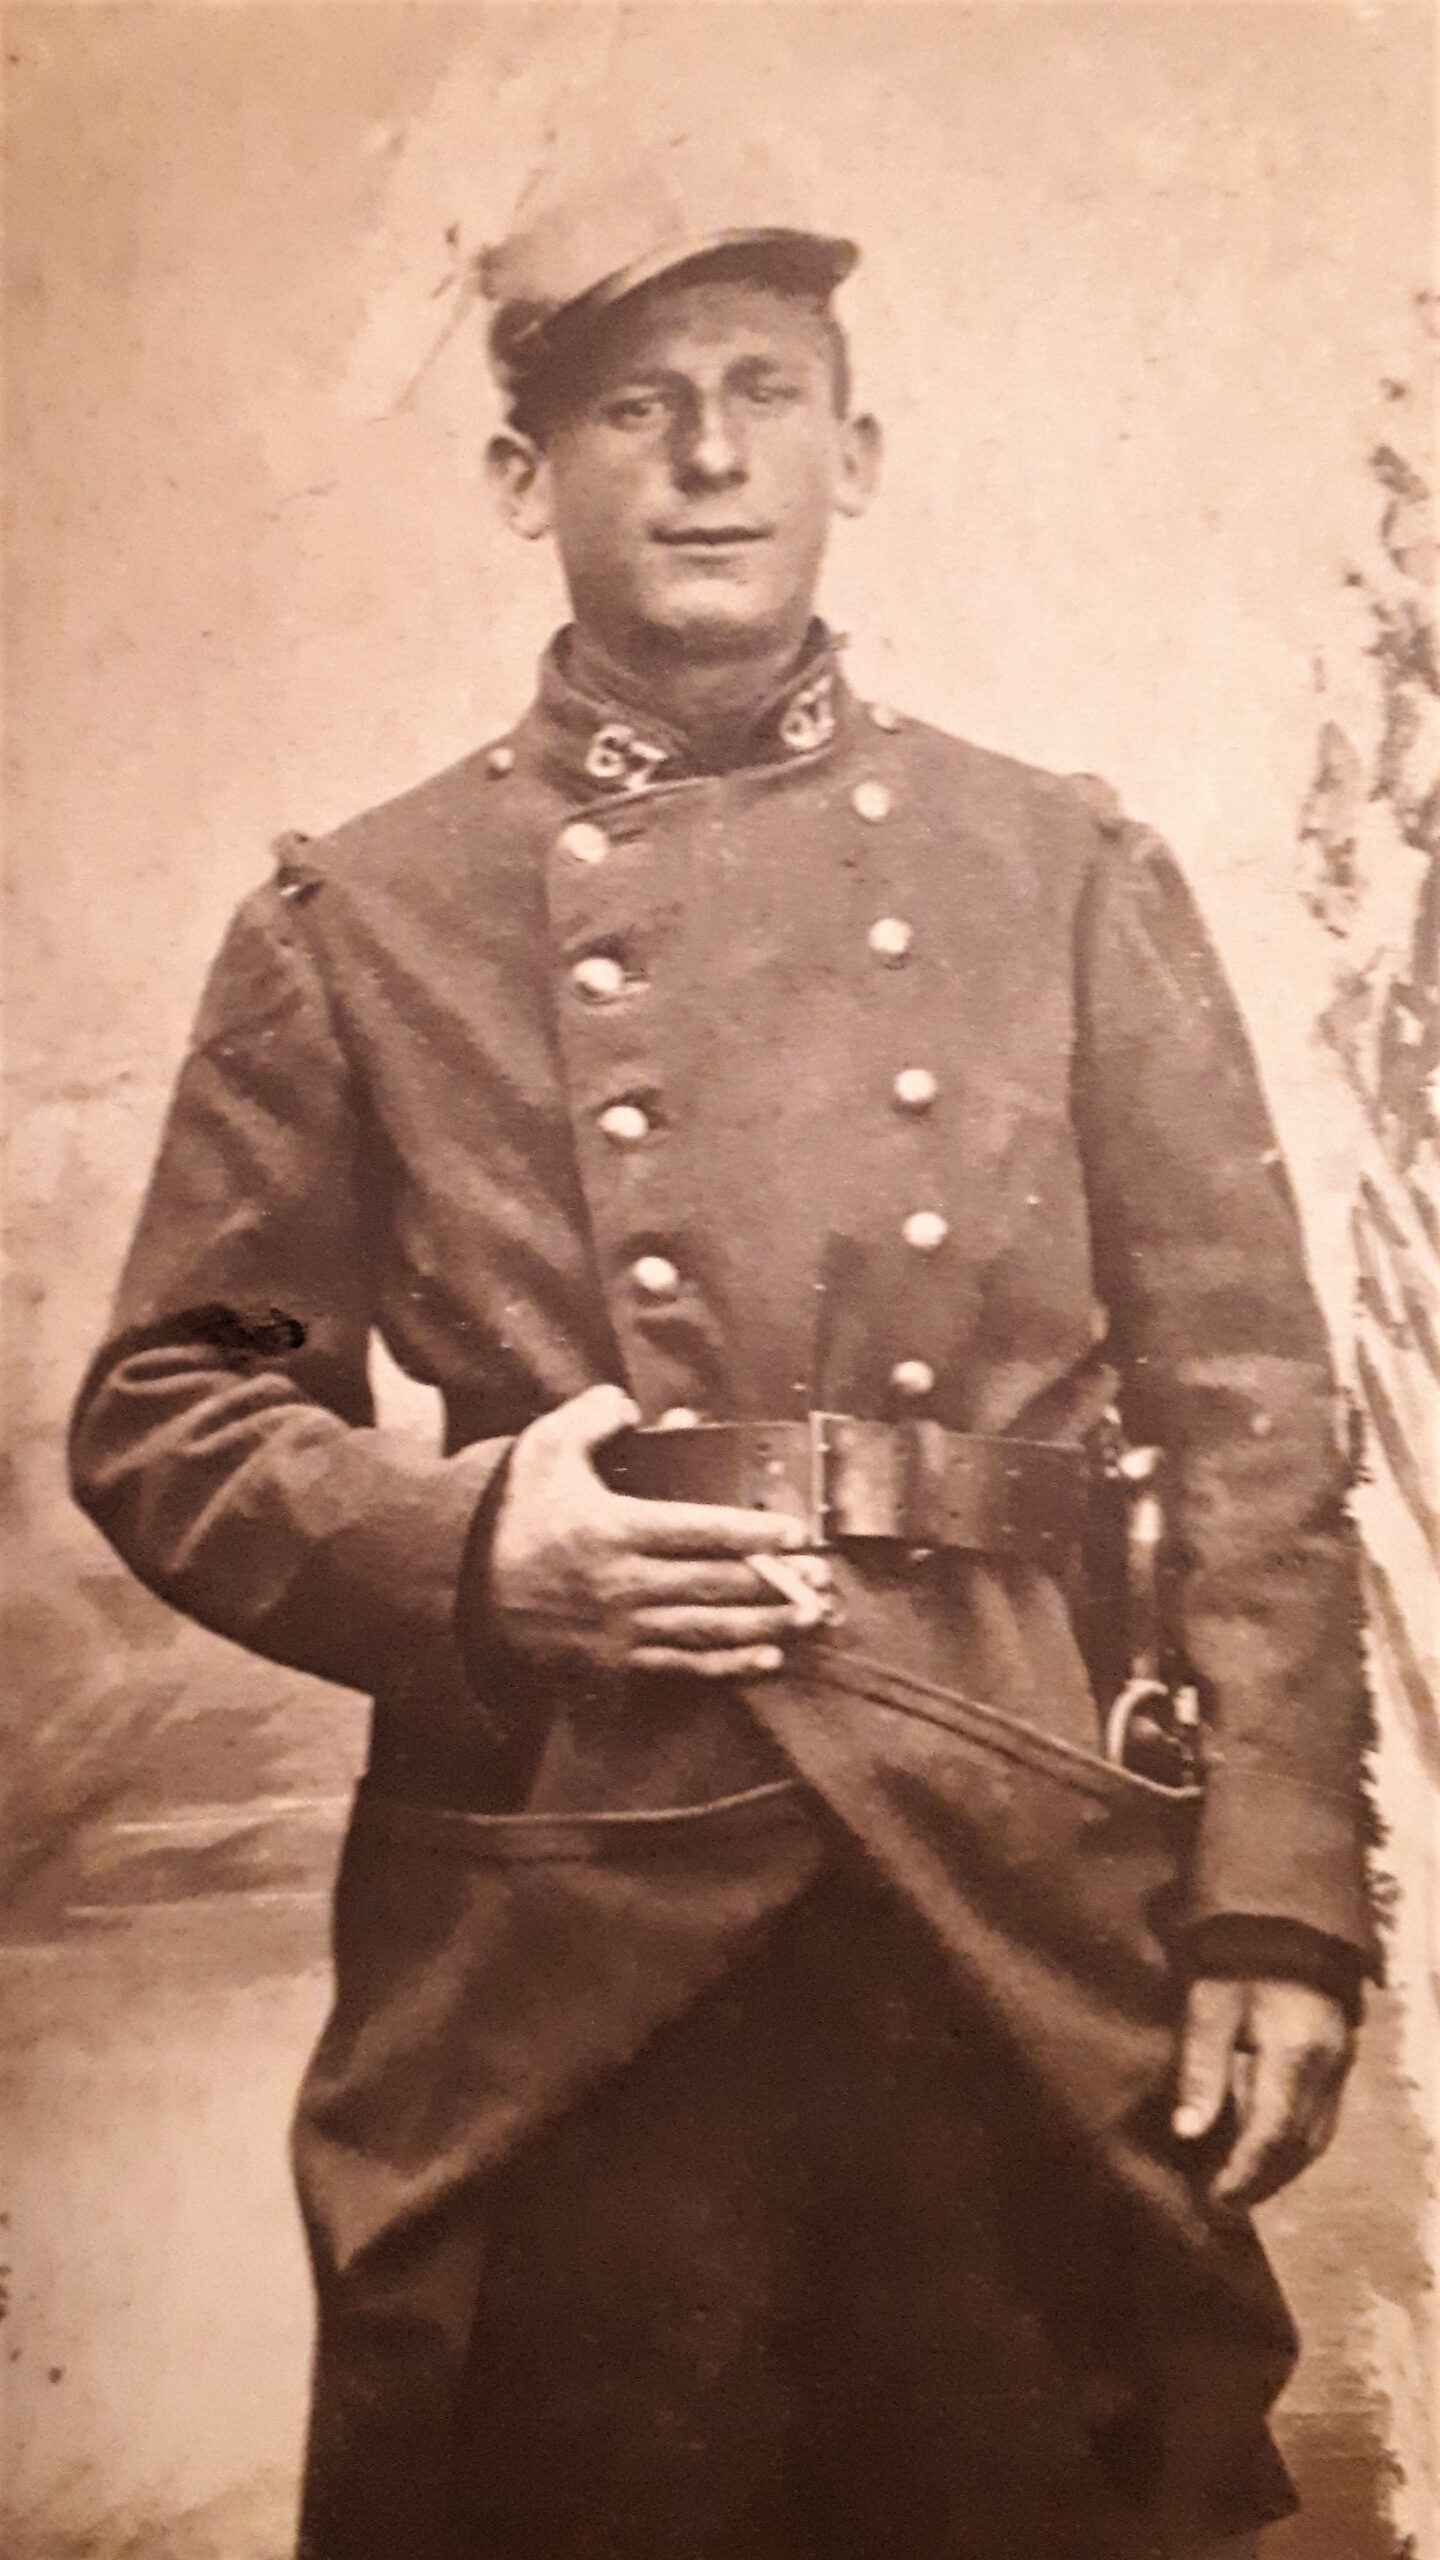 Marcel Bréant, le grand-oncle de Francis, tué près de Verdun en 1915. Photo colorisée et améliorée par MyHeritage.